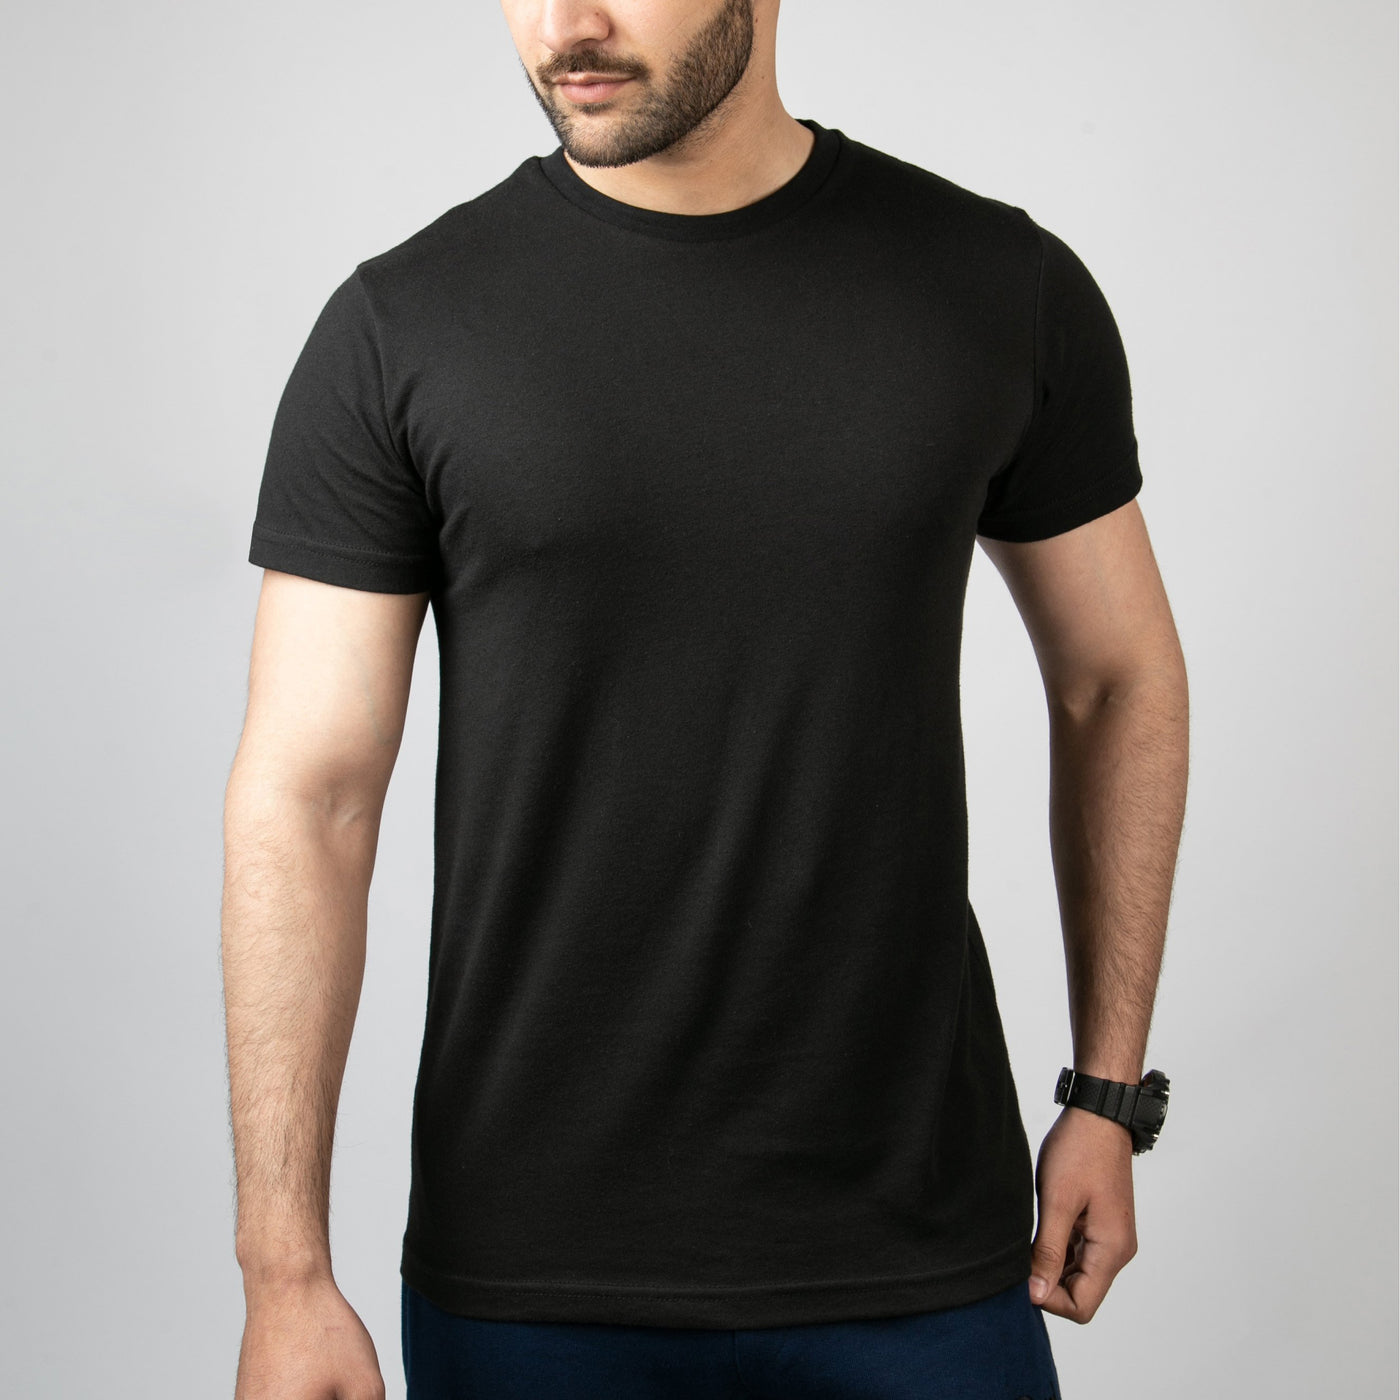 Plain Black T-Shirt RadStore.pk